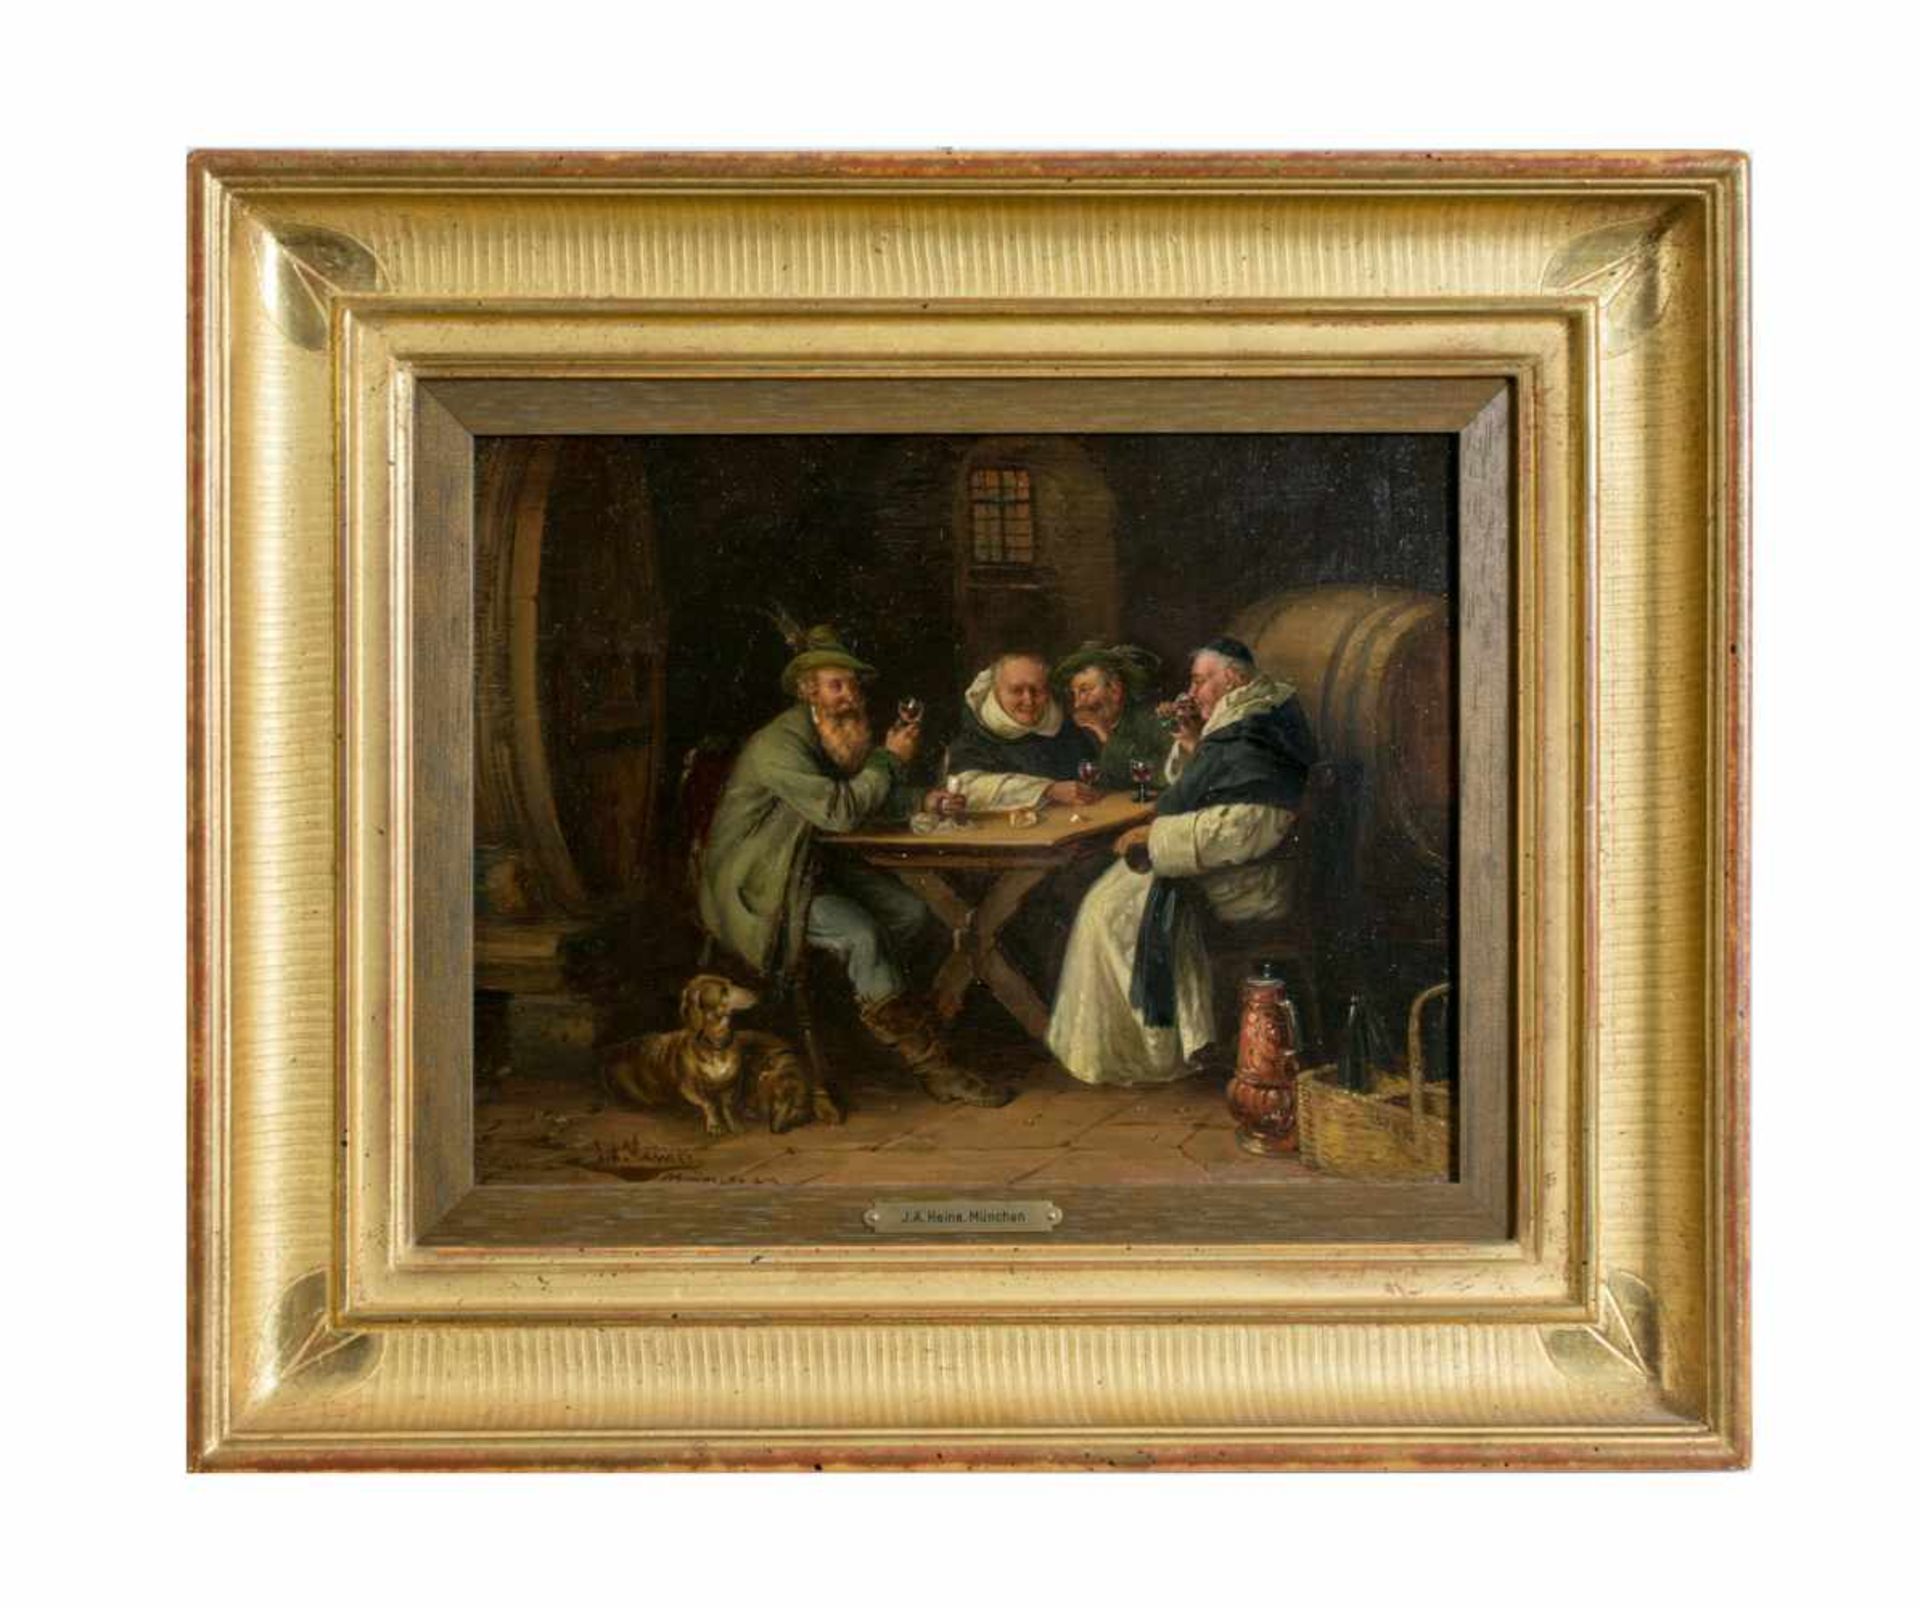 Johann Adalbert Heine (1850 - ?, war tätig in München) Beim Klosterbruder, Öl auf Holz, 24,5 cm x